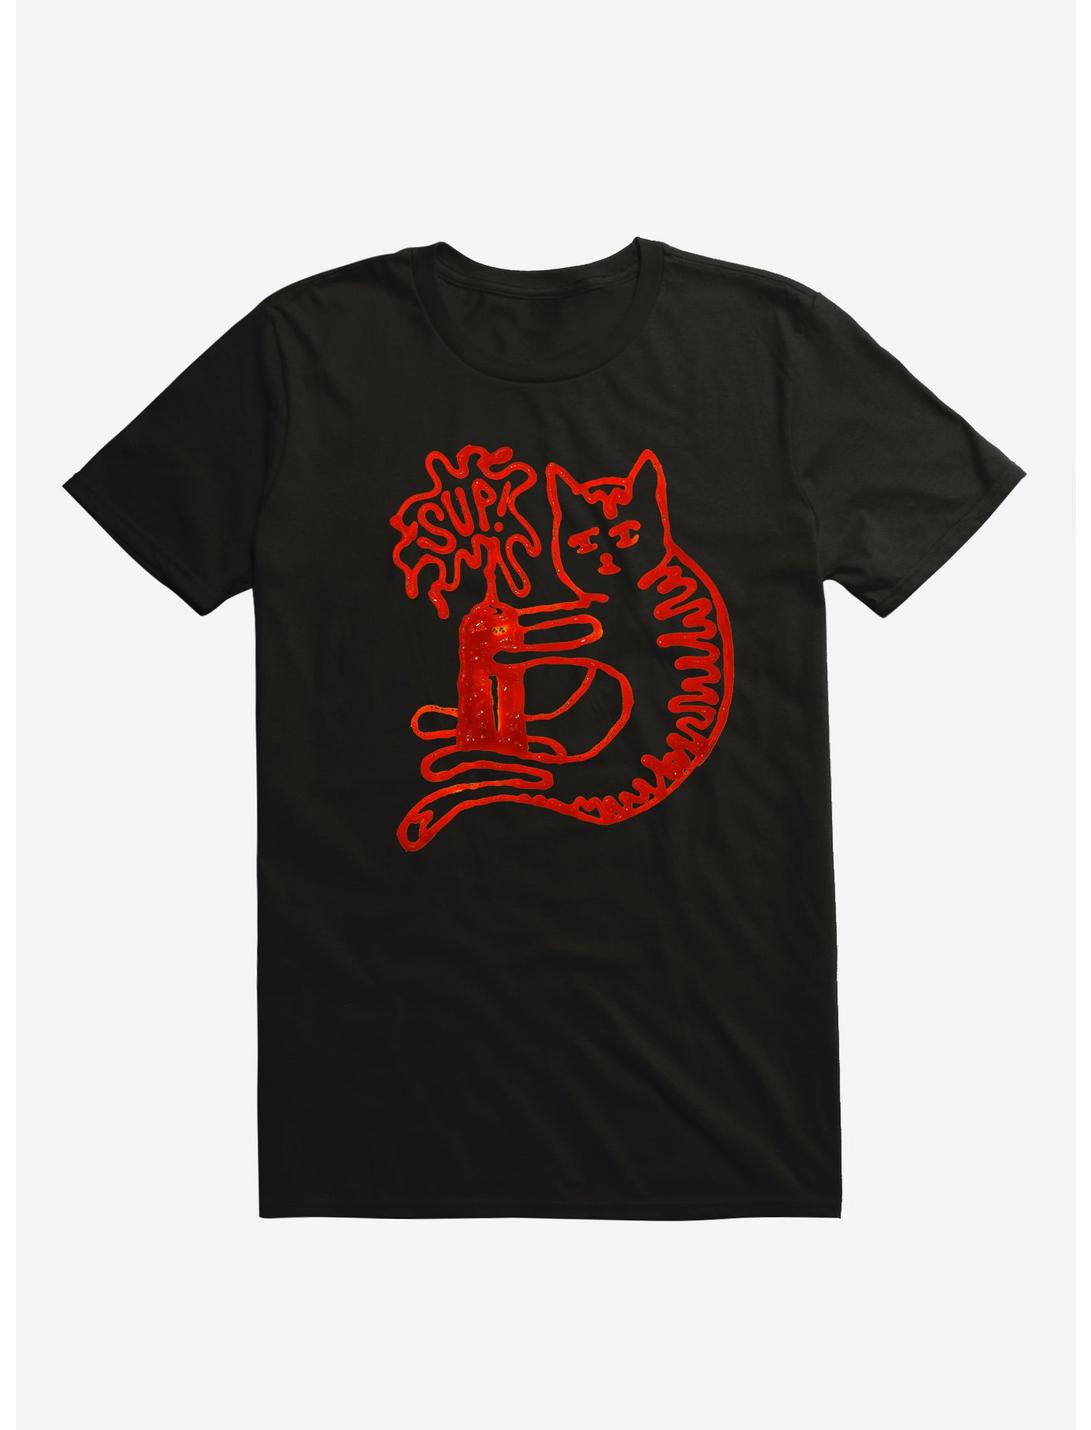 Catsup Cat Ketchup Black T-Shirt, BLACK, hi-res